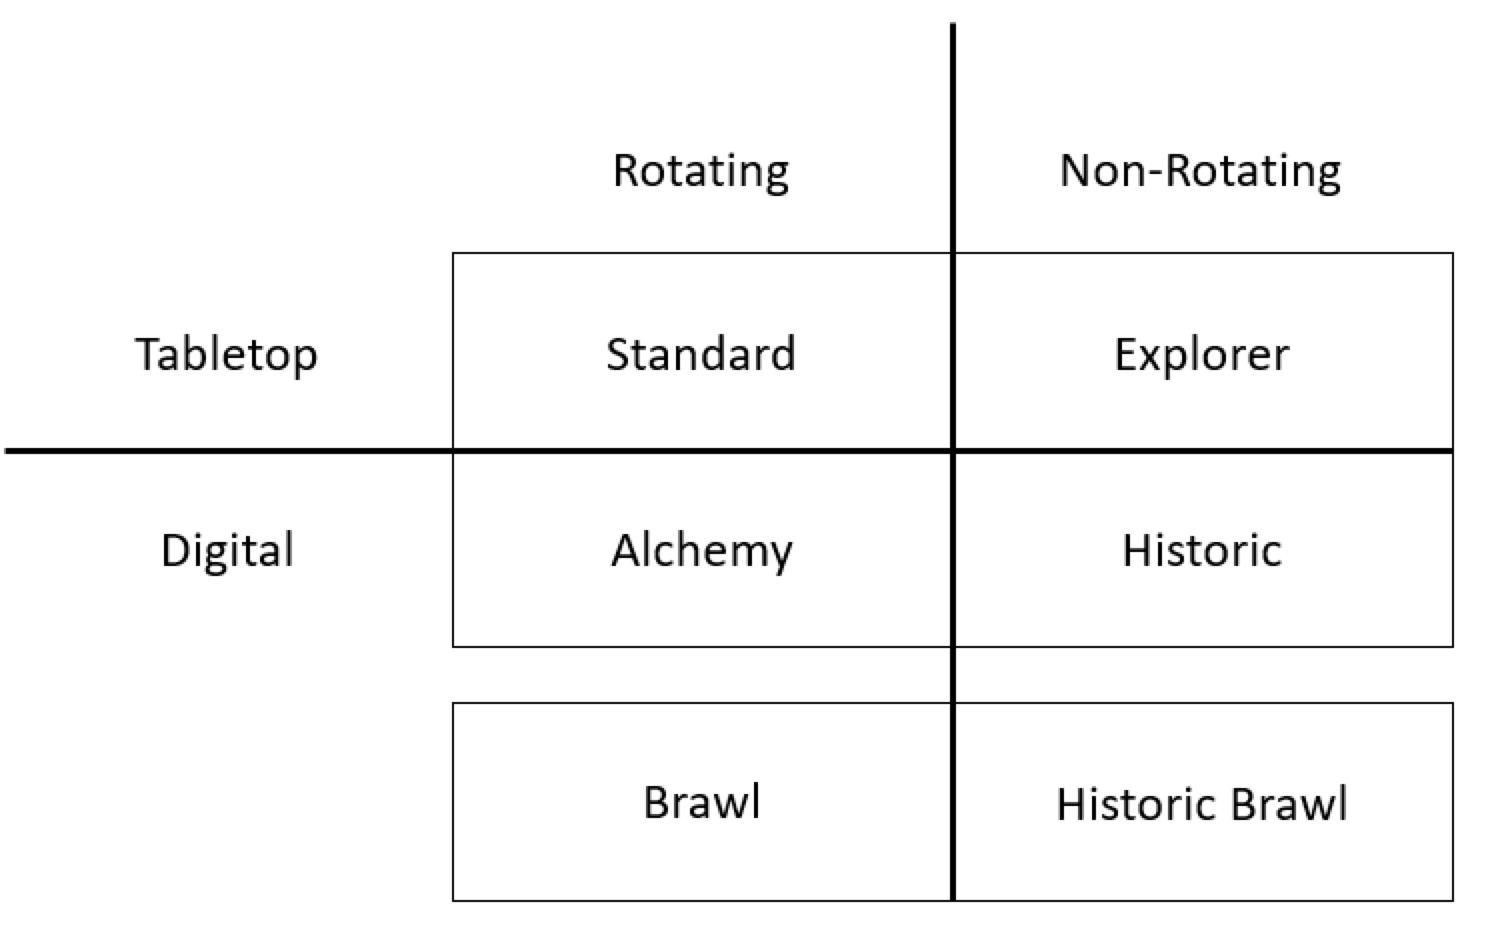 Diagramm mit Tabletop- und digitalen Formaten, unterteilt in rotierende (Standard, Alchemy und Brawl) und nicht-rotierende (Explorer, Historic und Historic Brawl) Formate.